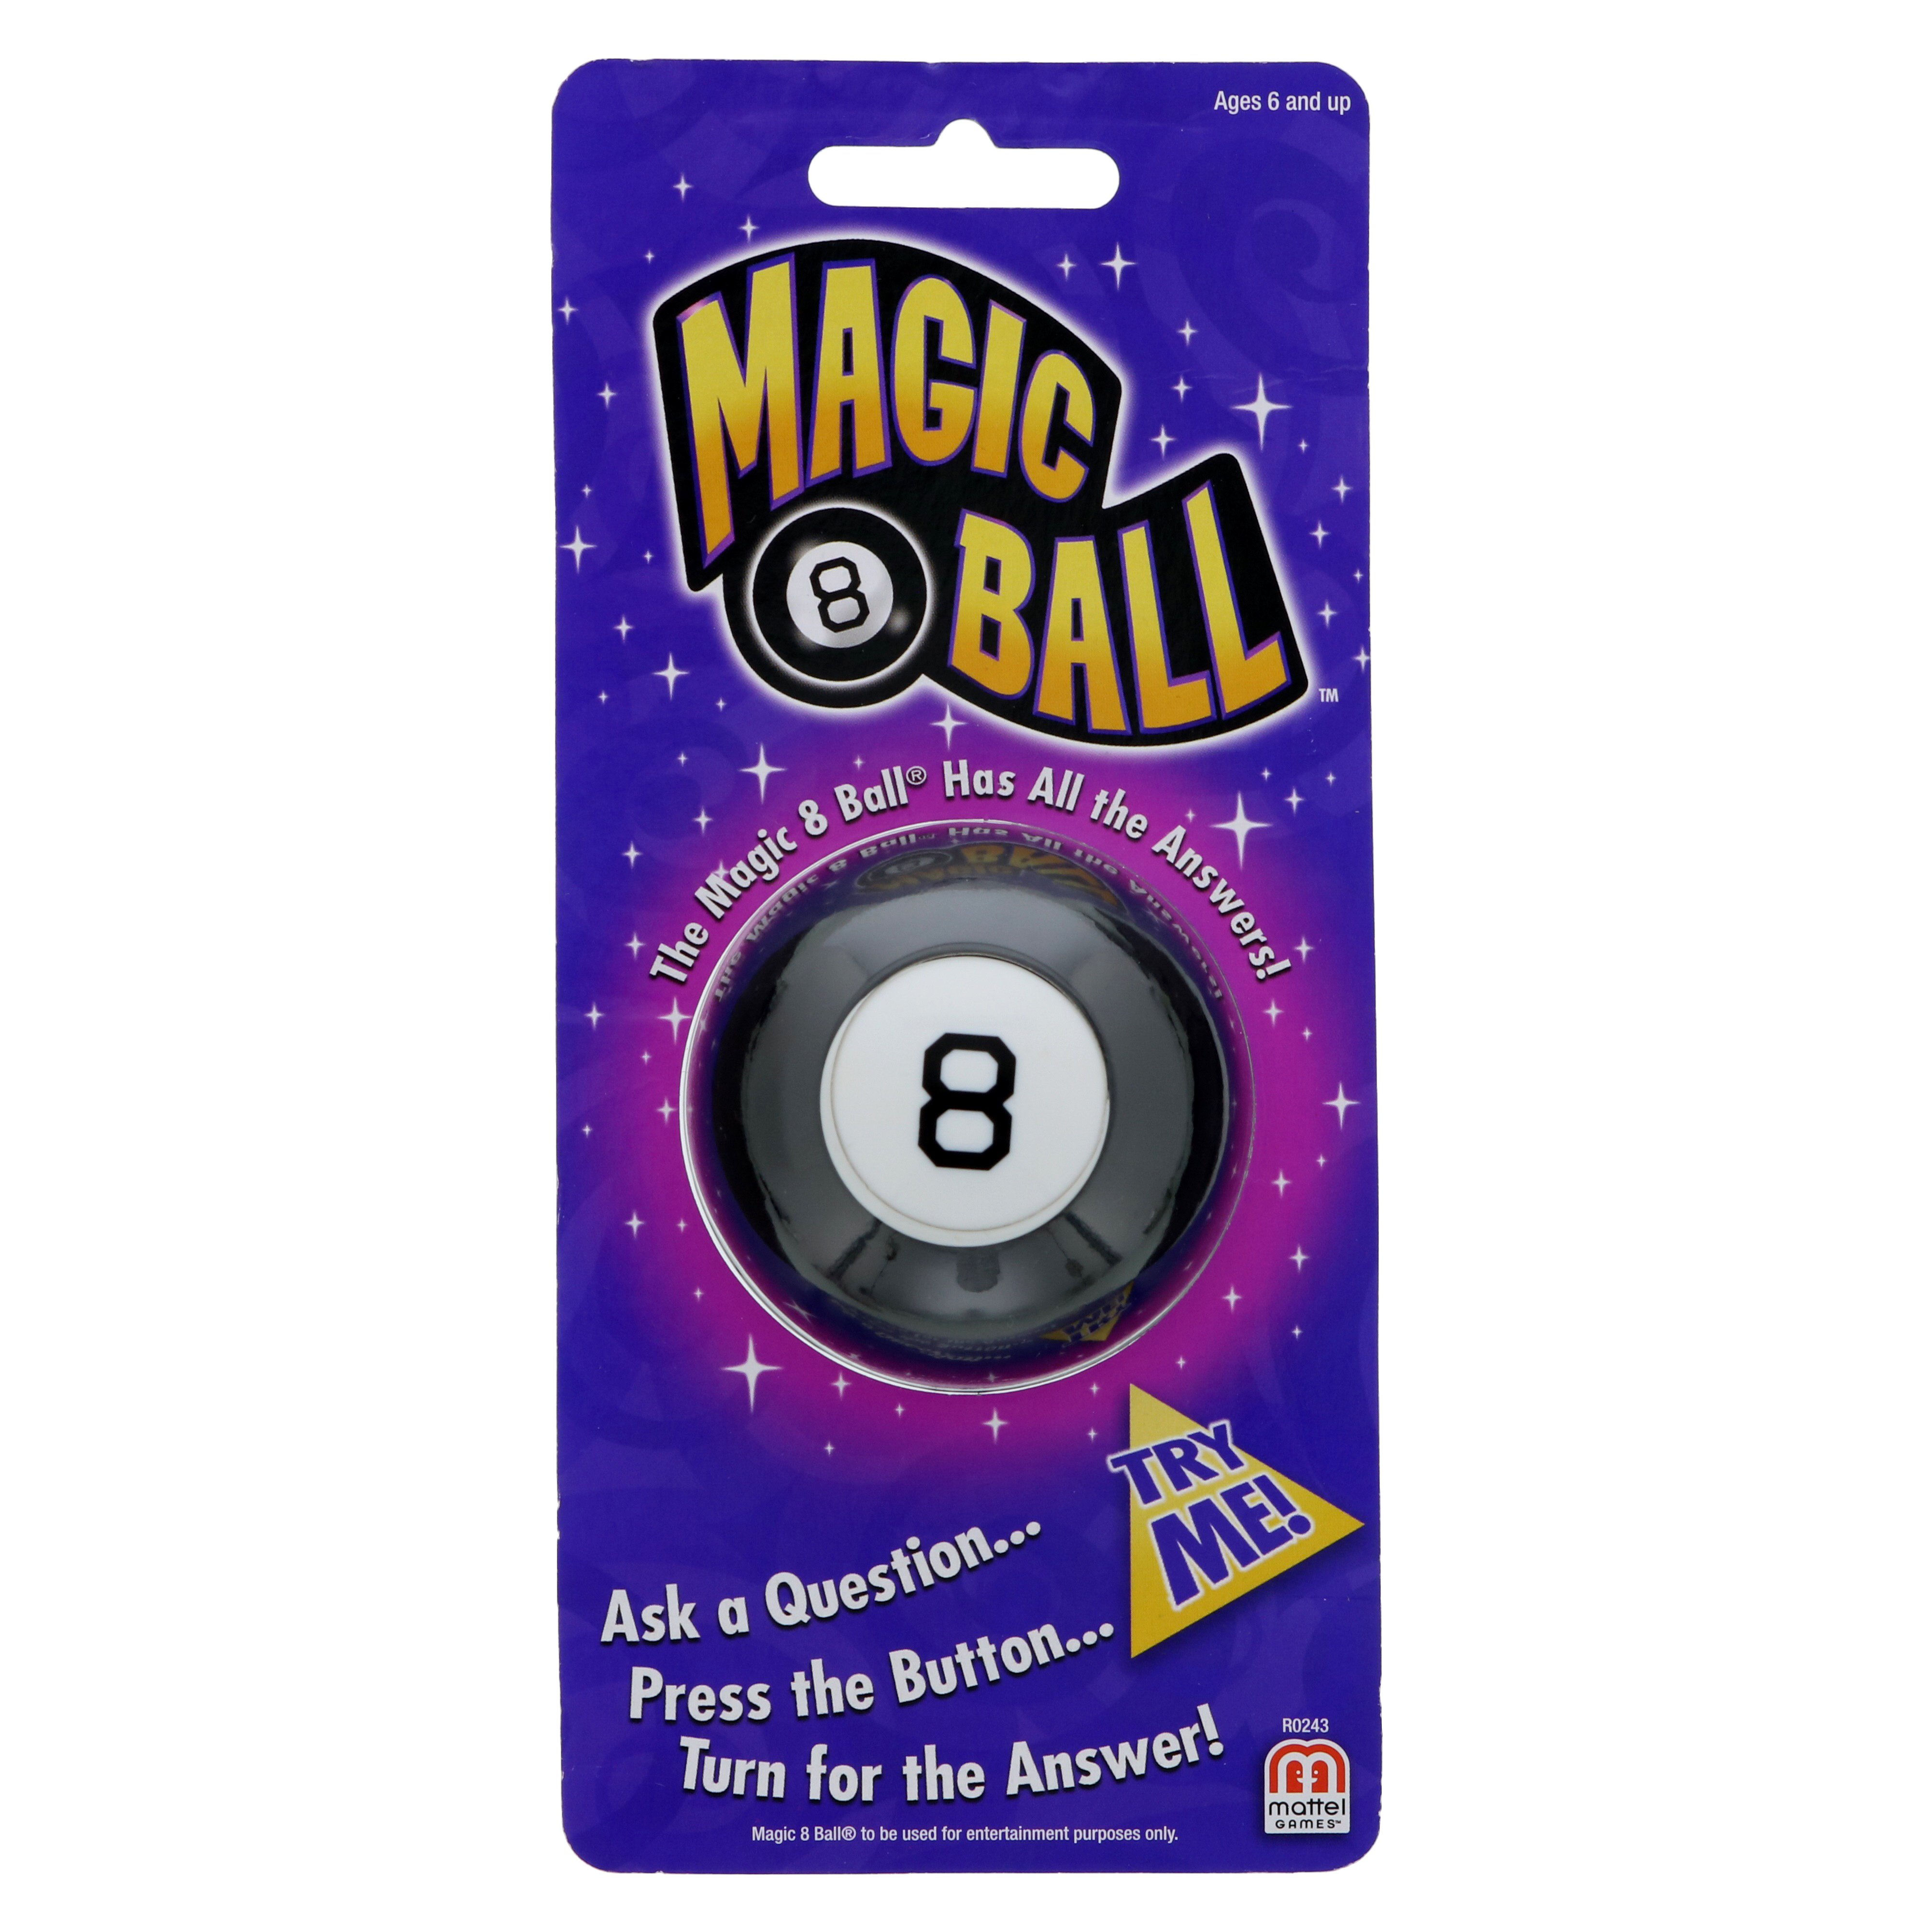 Magic 8 Ball from Mattel 